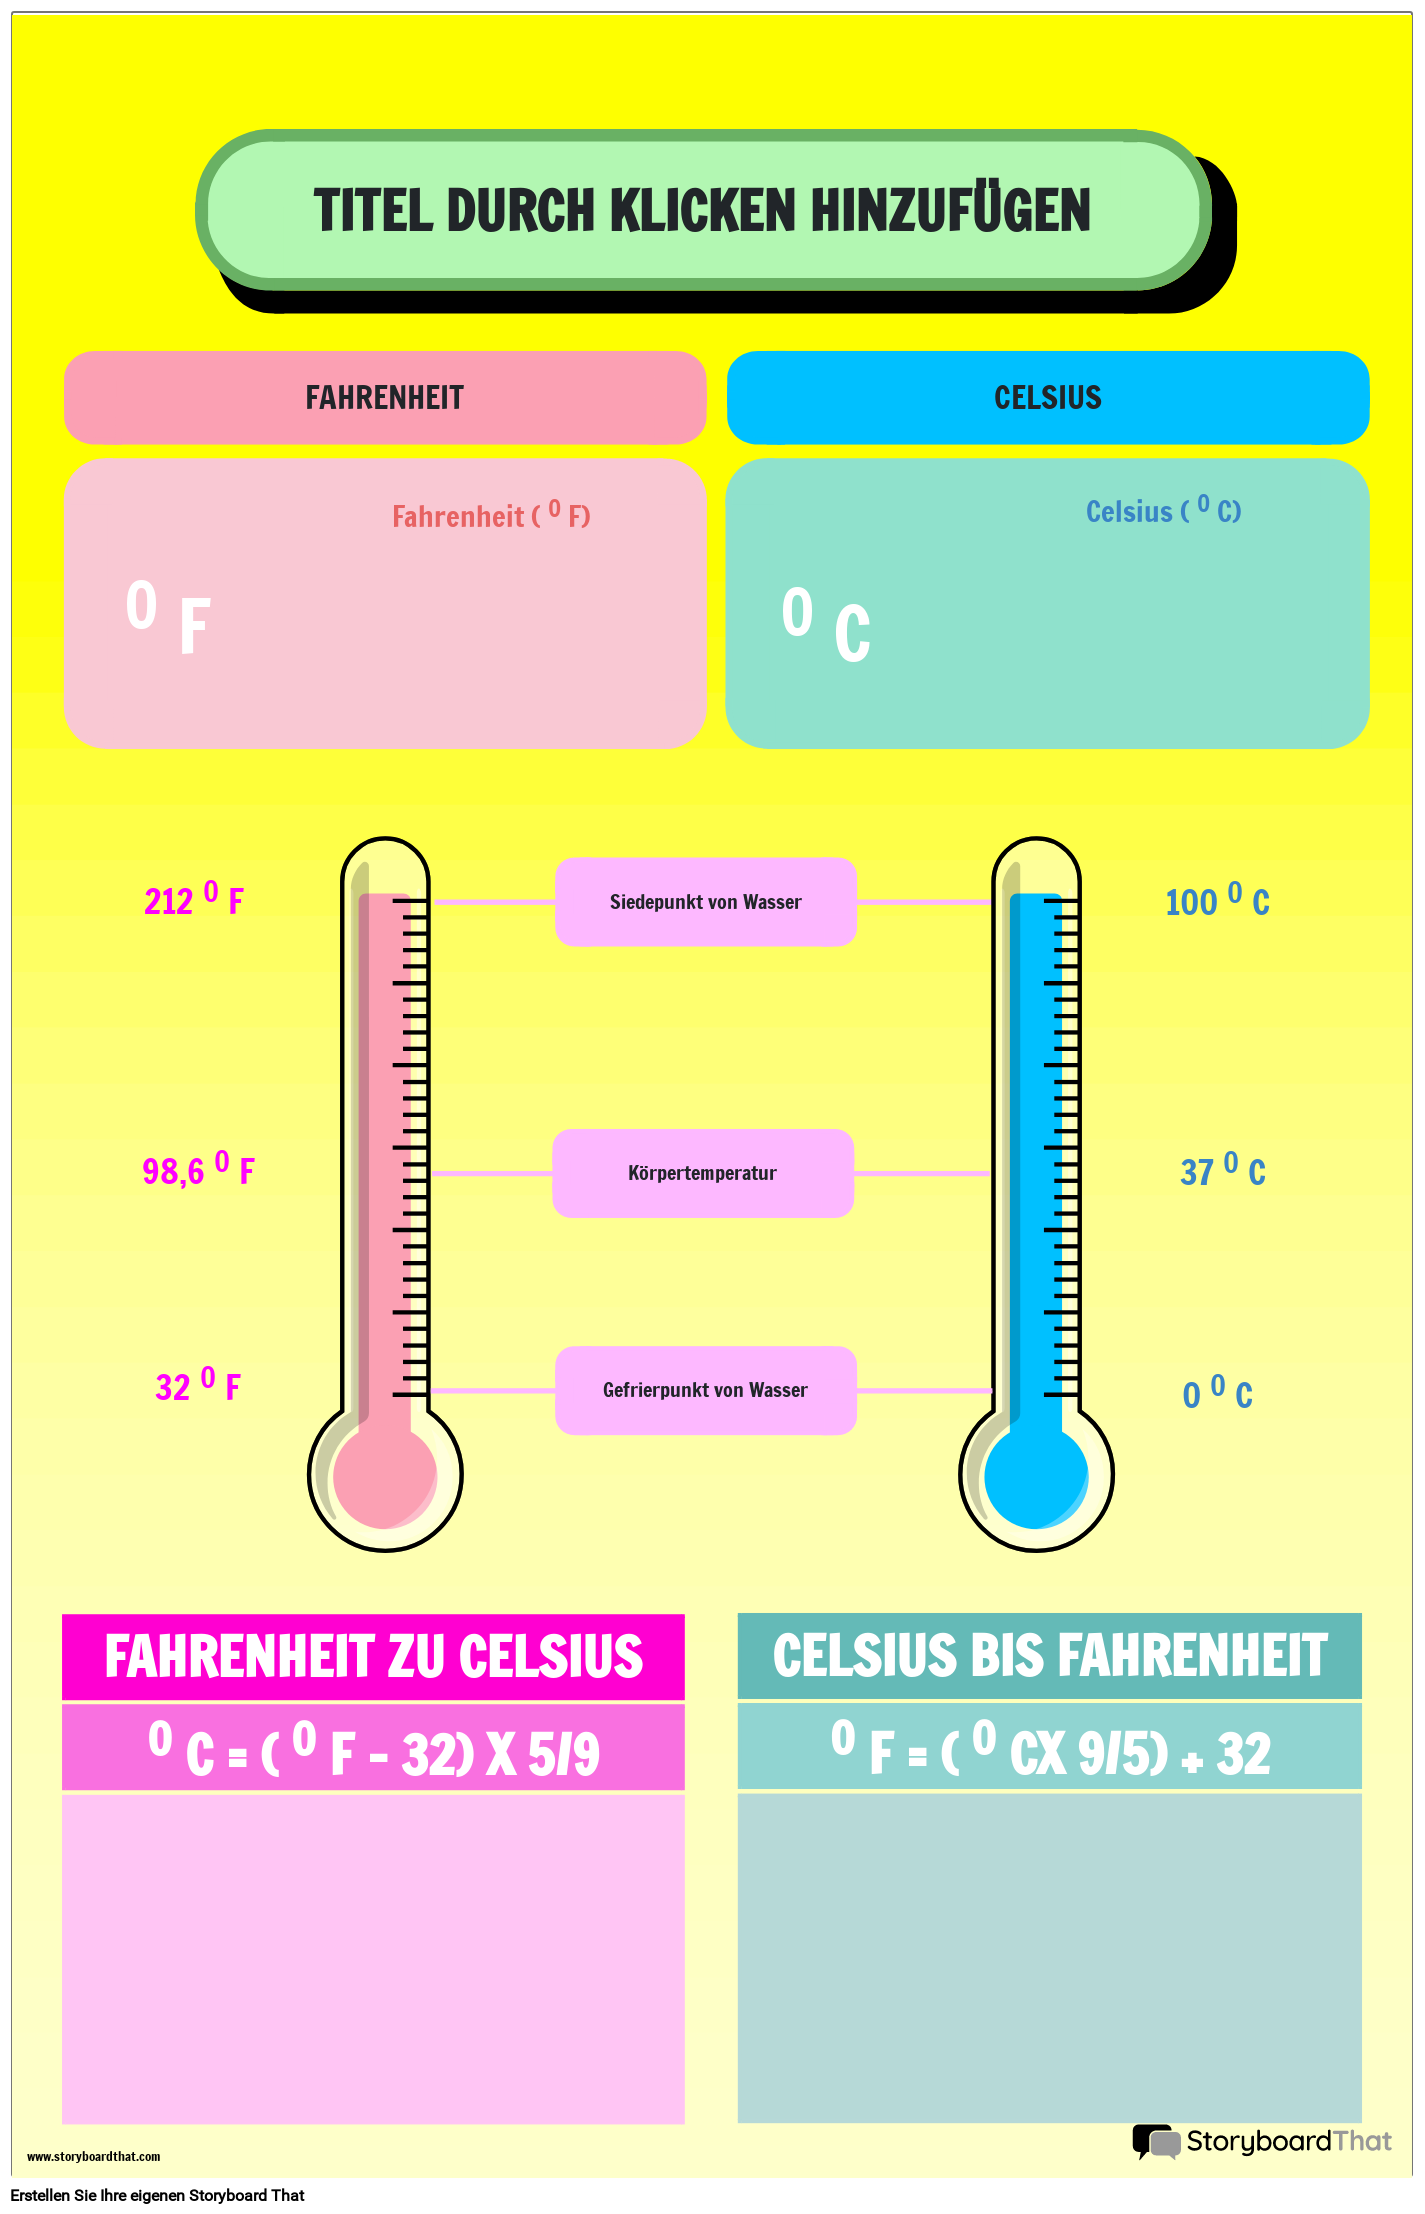 Poster zur Temperaturumrechnung mit Fahrenheit- und Celsius-Vergleich